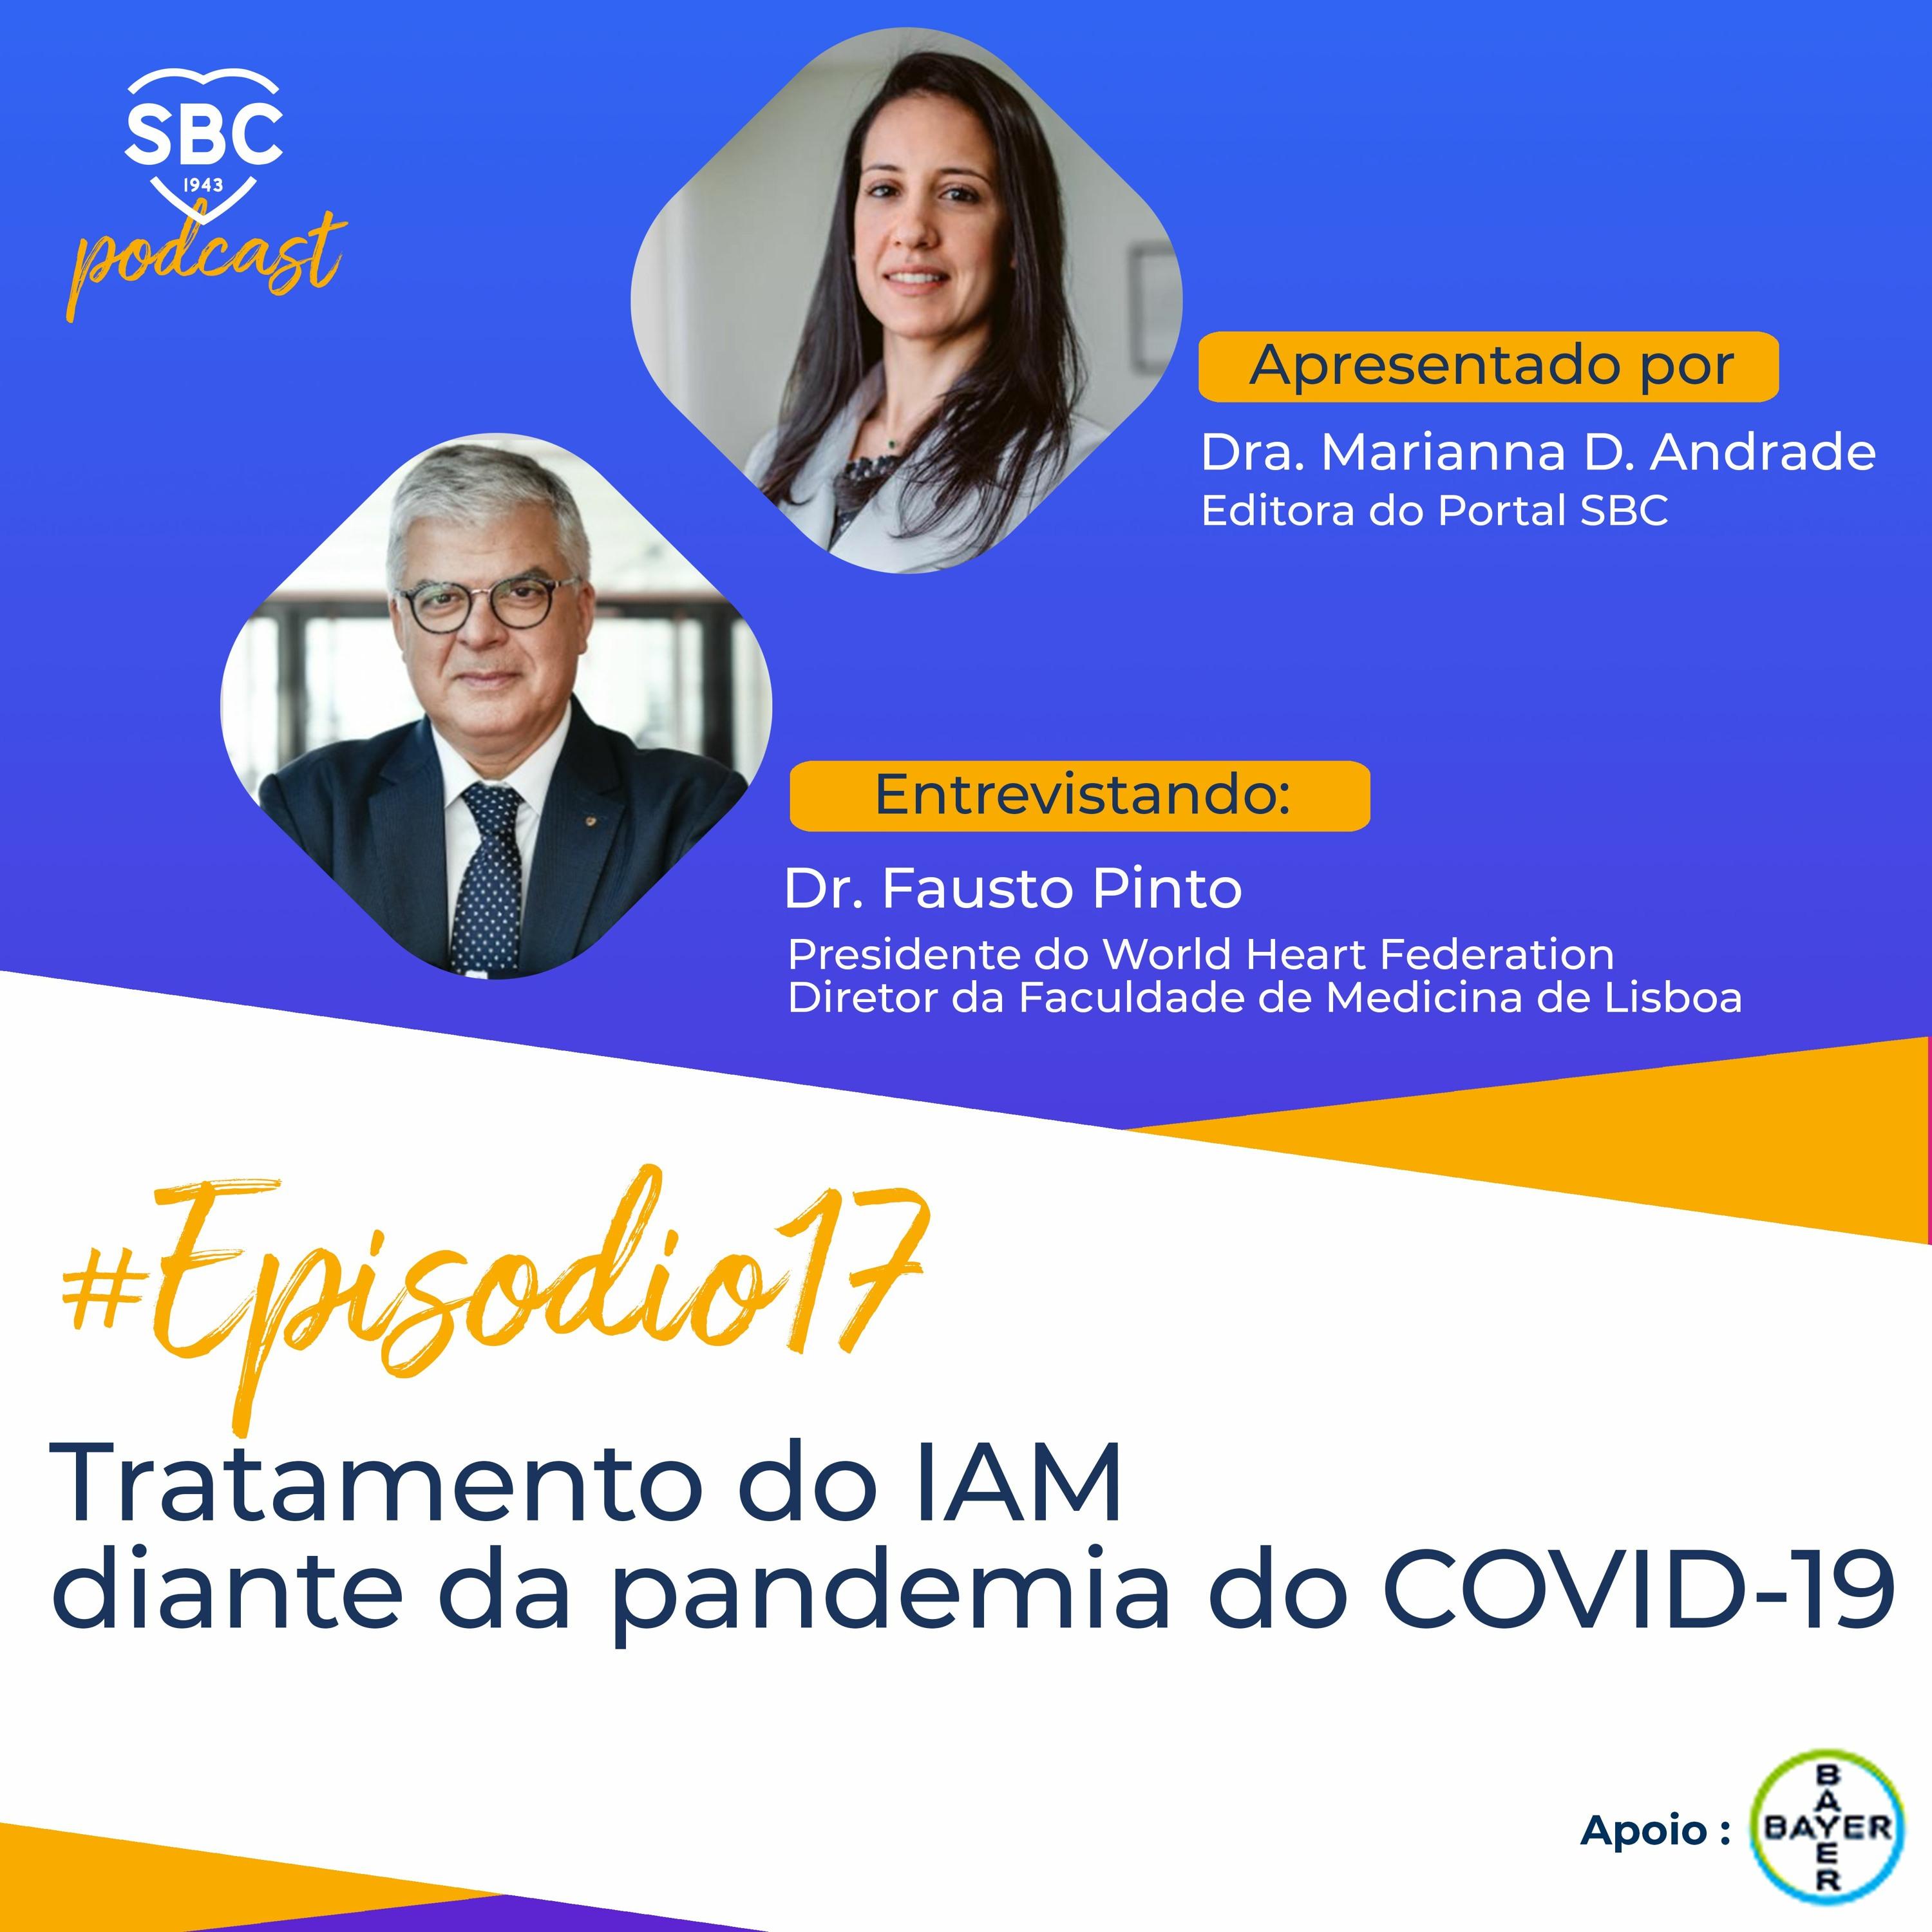 Neste episódio, a Dra. Marianna Andrade entrevista o Dr. Fausto Pinto sobre os desafios do manejo de pacientes com IAM durante o pandemia pelo COVID19.